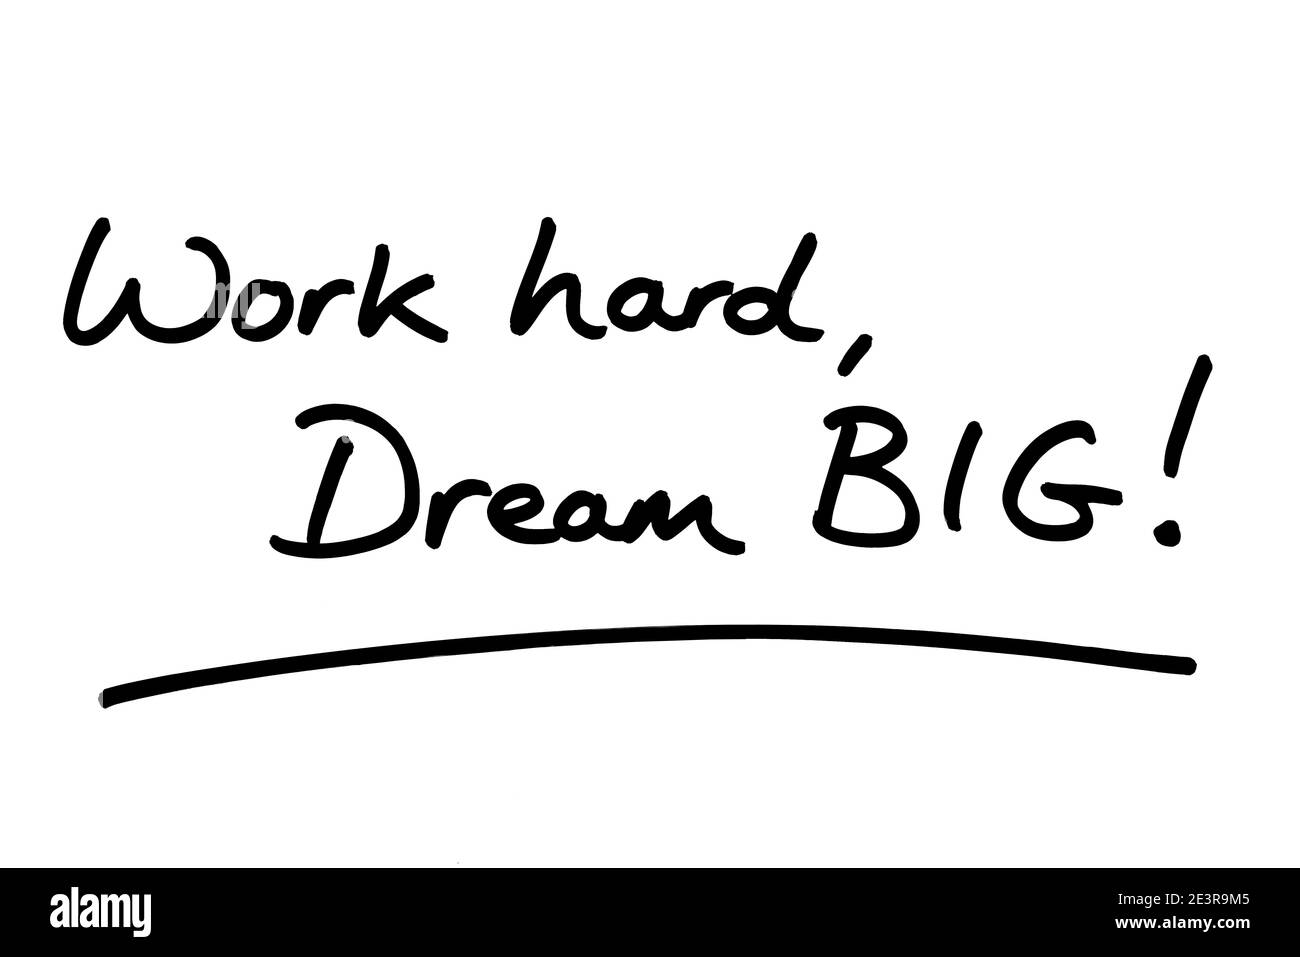 Travaillez dur, rêvez GRAND ! manuscrit sur fond blanc. Banque D'Images